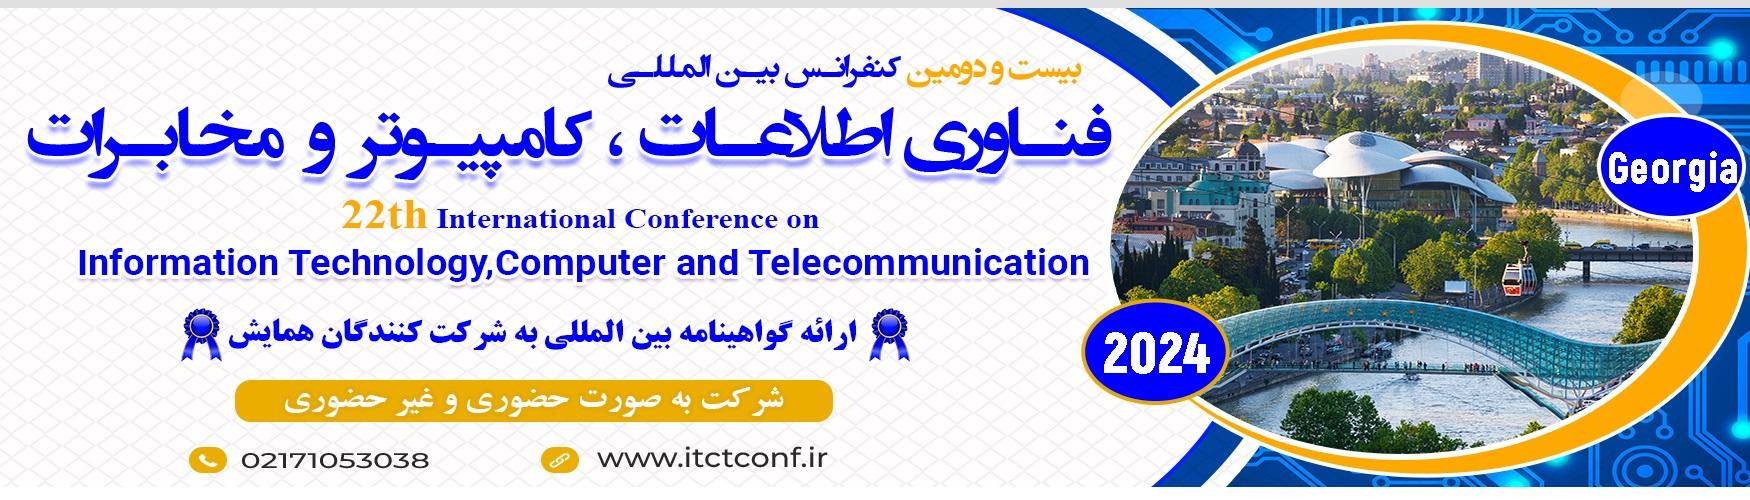 بیستمین کنفرانس بین المللی فناوری اطلاعات،کامپیوتر و مخابرات